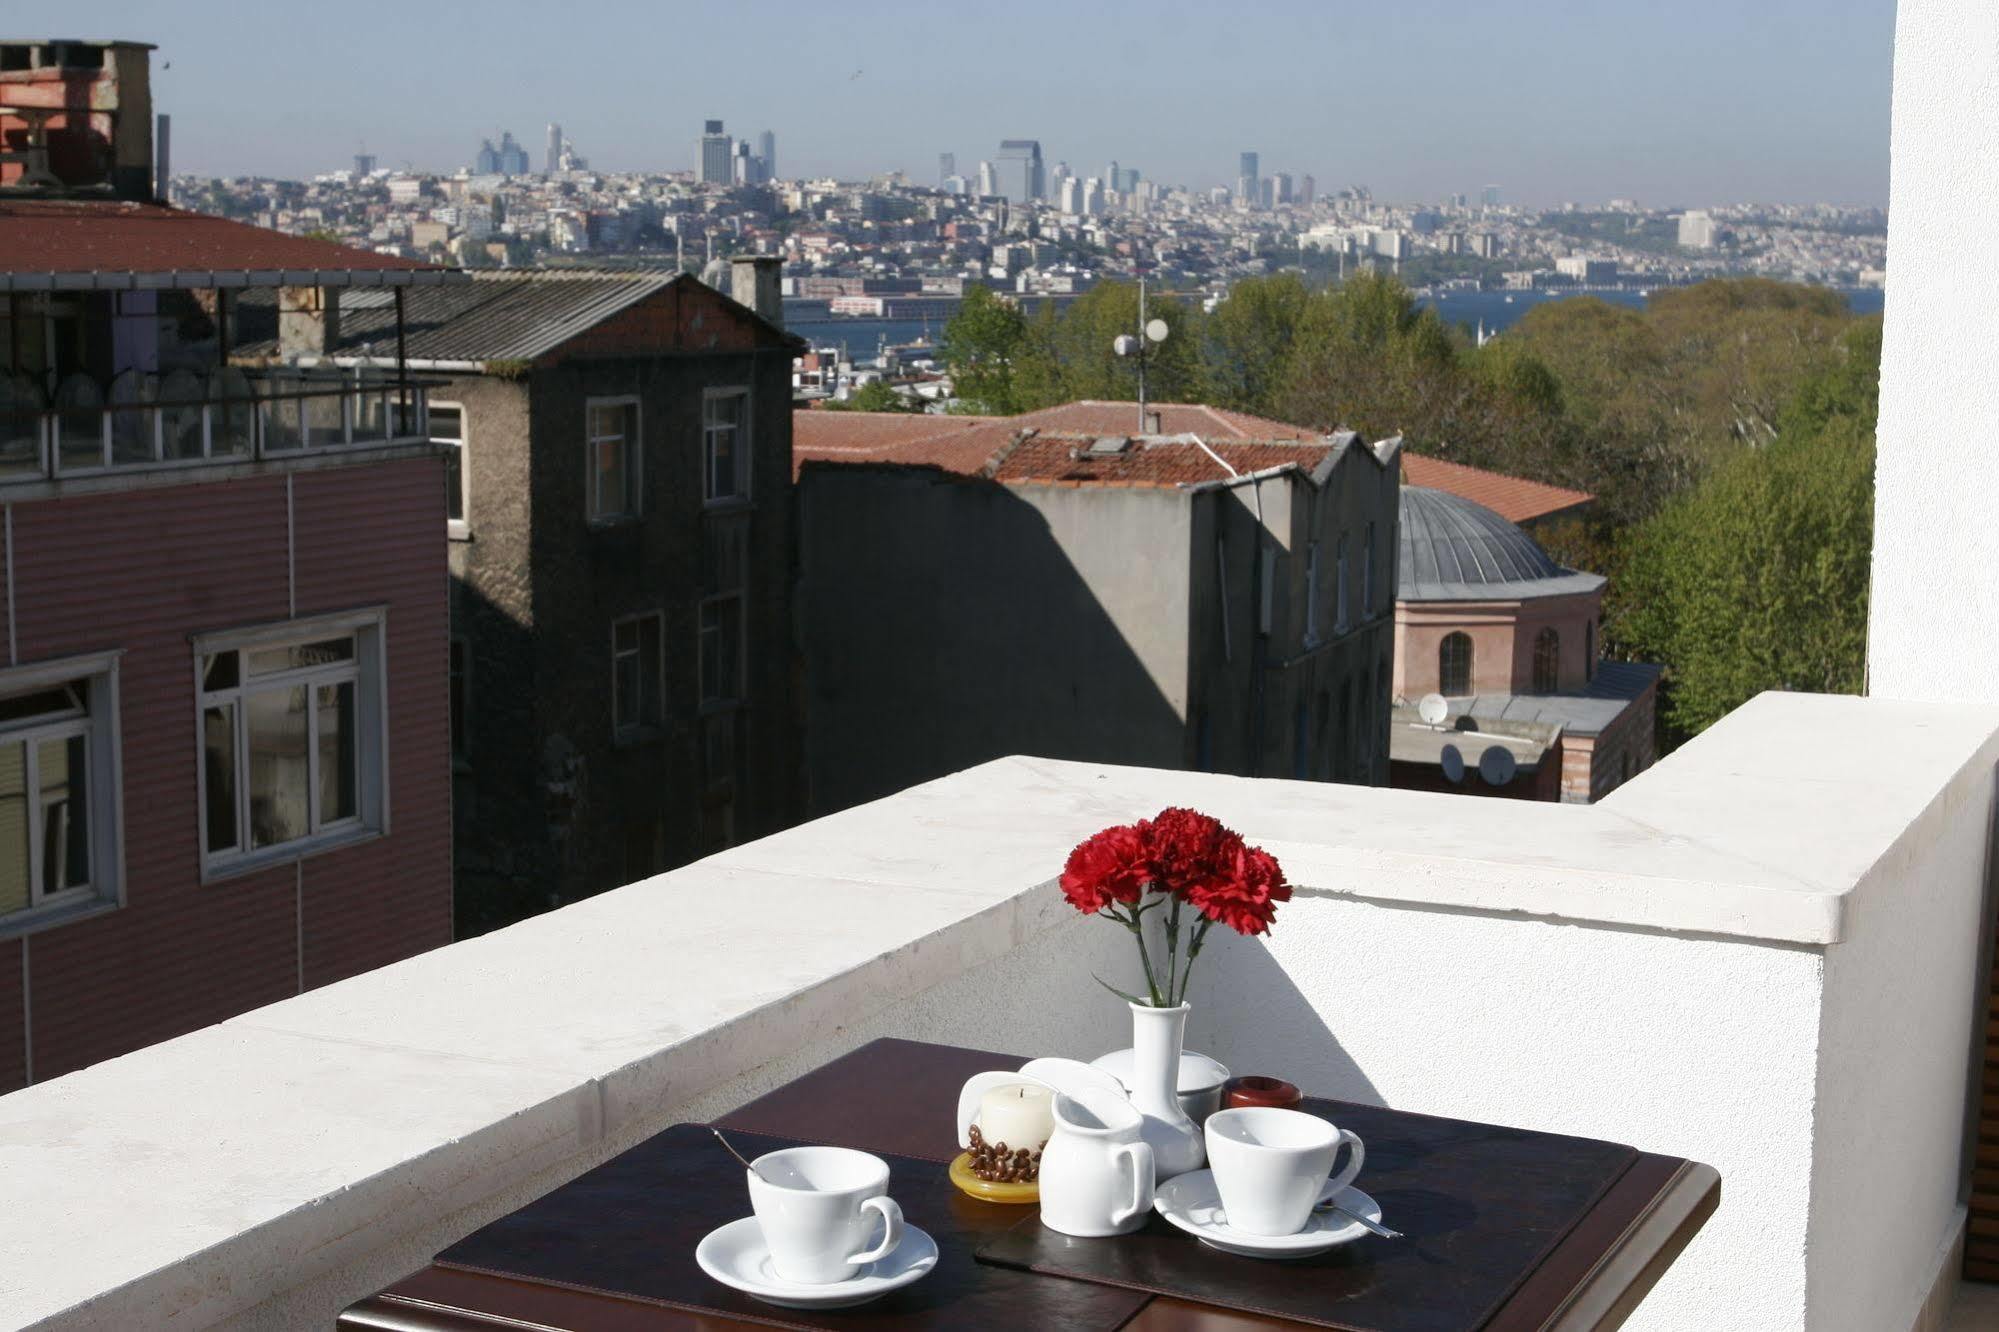 Hotel Vera 伊斯坦布尔 外观 照片